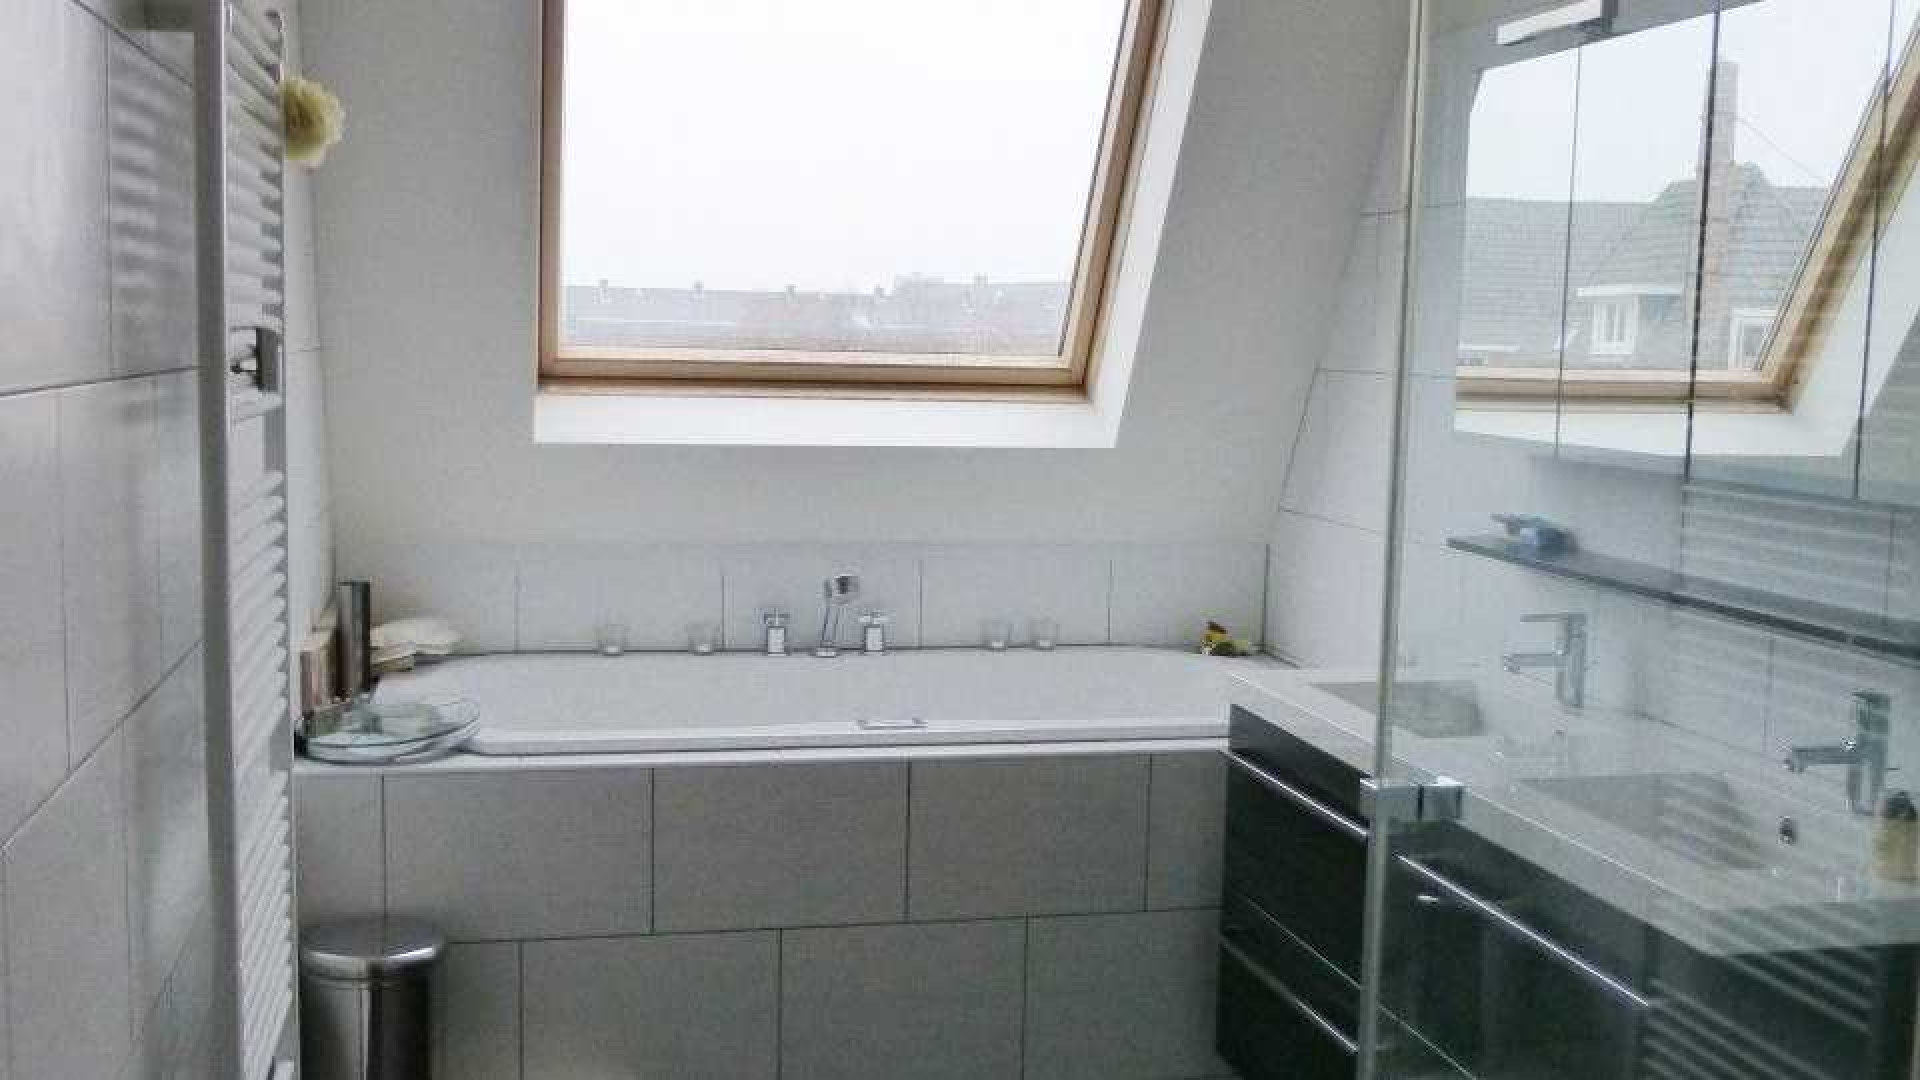 PSV voetballer Siem de Jong zet zijn appartement in Amsterdam Oud Zuid te huur. Zie foto's 11